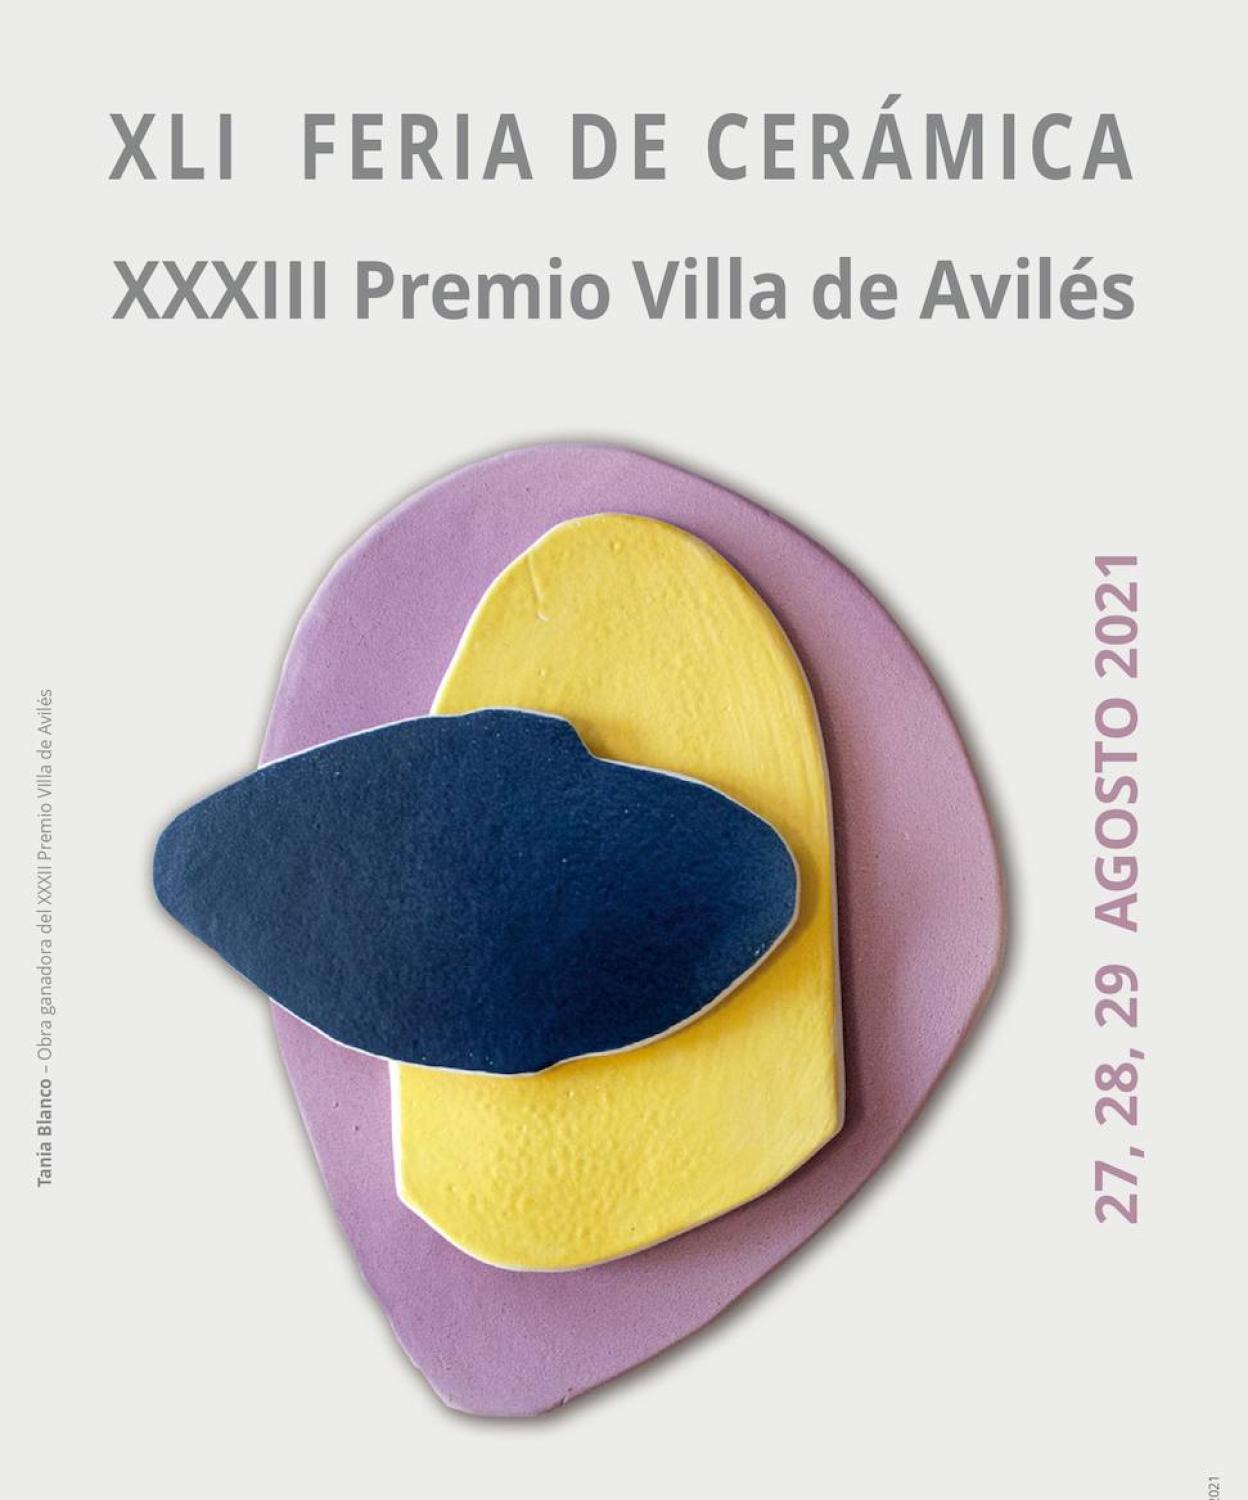 Cartel oficial de la XLI Feria de cerámica en Avilés. 